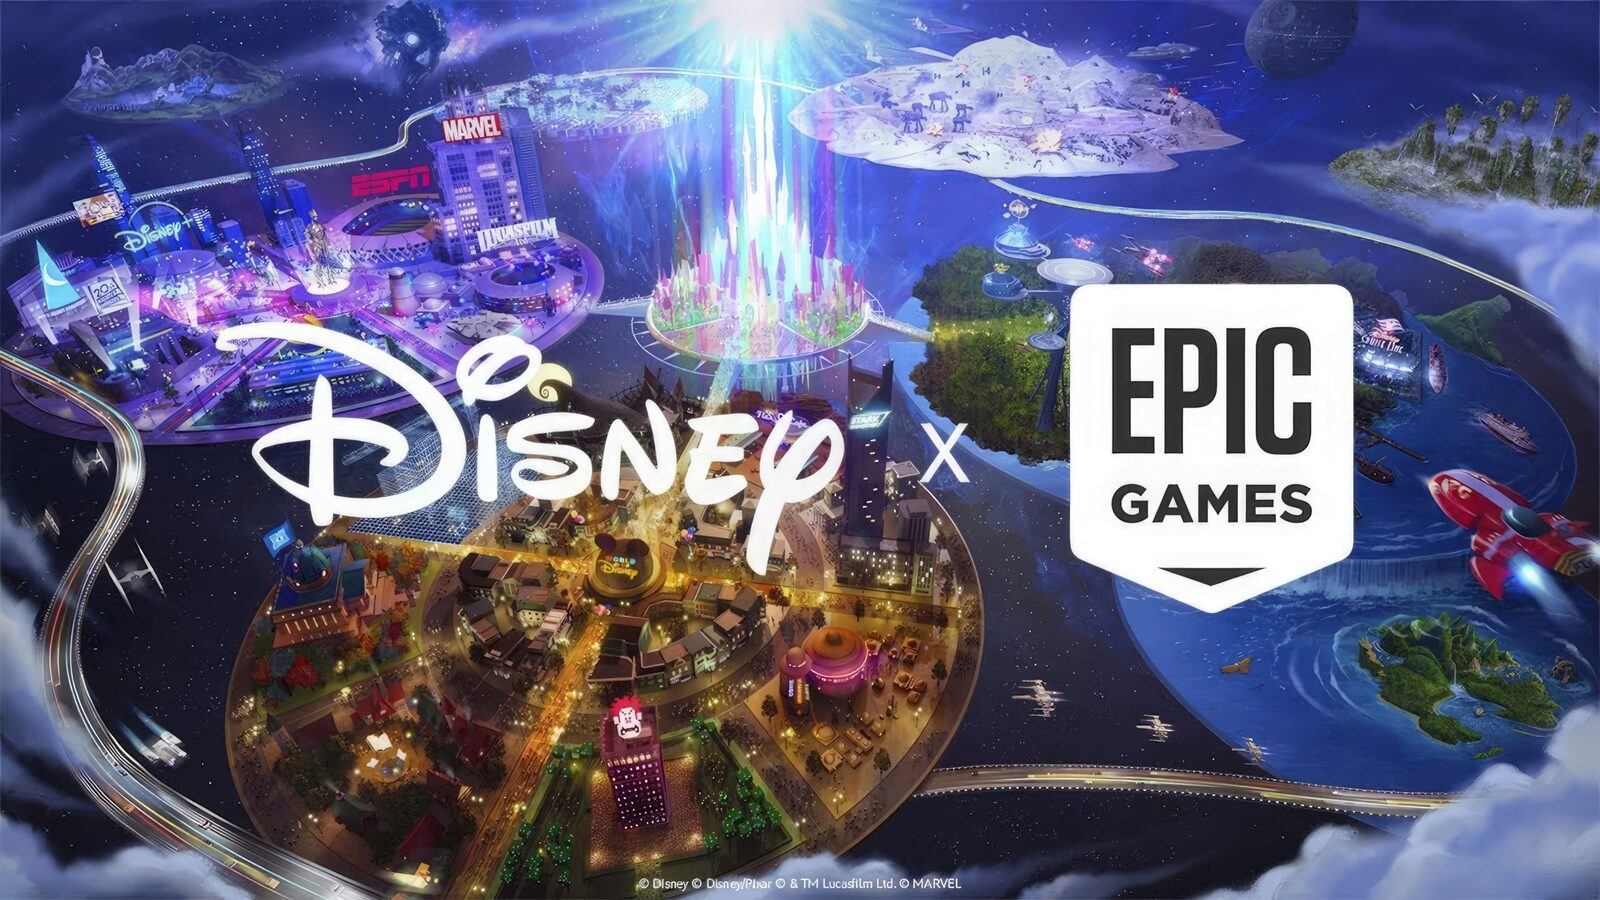 Kolorowy i fantastyczny obraz przedstawiający kolaborację Disney i Epic Games, z ikonicznymi elementami obu marek tworzącymi dynamiczny krajobraz pełen atrakcji i charakterystycznych symboli, takich jak zamki i postacie z różnych uniwersów, z widocznymi logo obu firm.